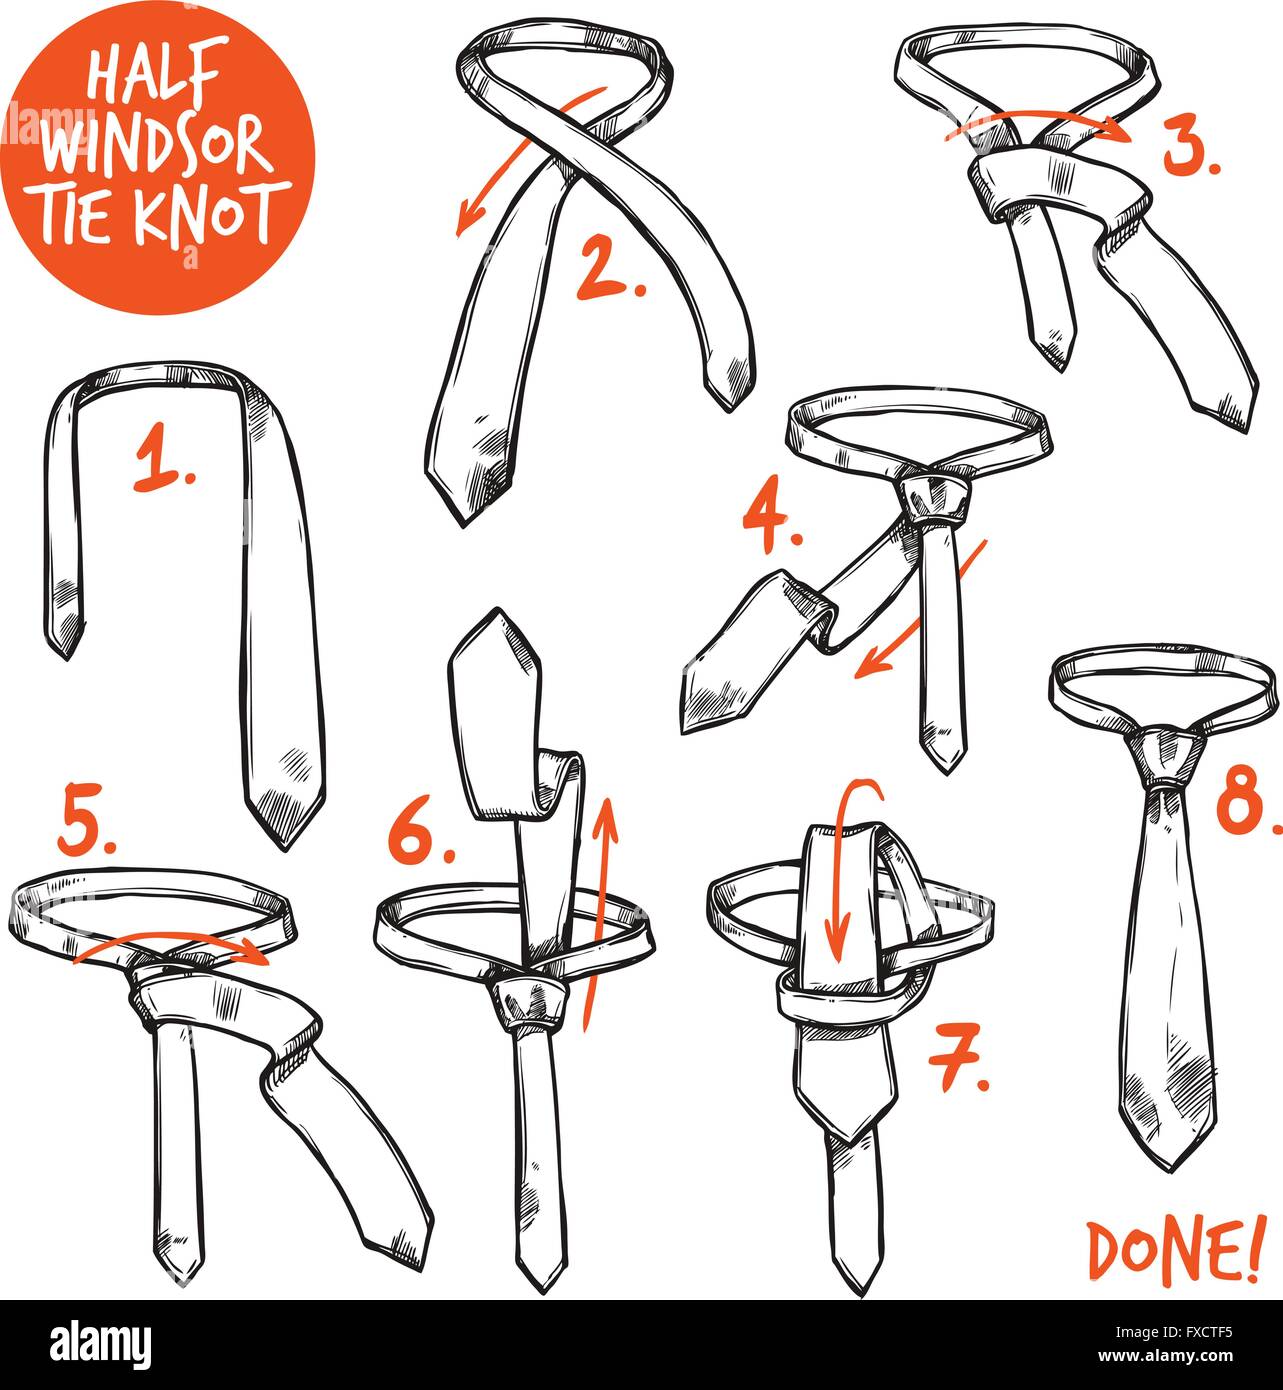 Croquis de noeud de cravate Image Vectorielle Stock - Alamy